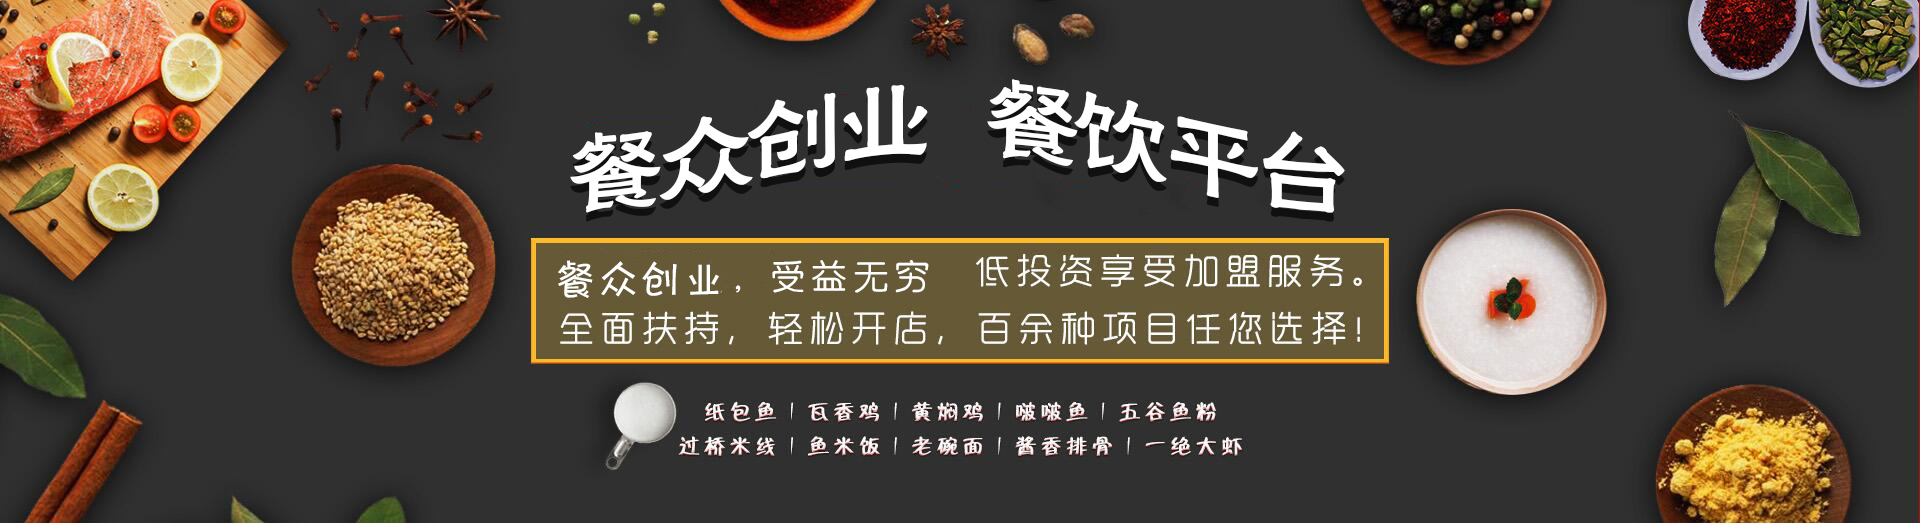 郑州餐众餐饮集团官网|瓦香鸡加盟|黄焖鸡加盟|瓦香鸡培训|餐众餐饮啵啵鱼